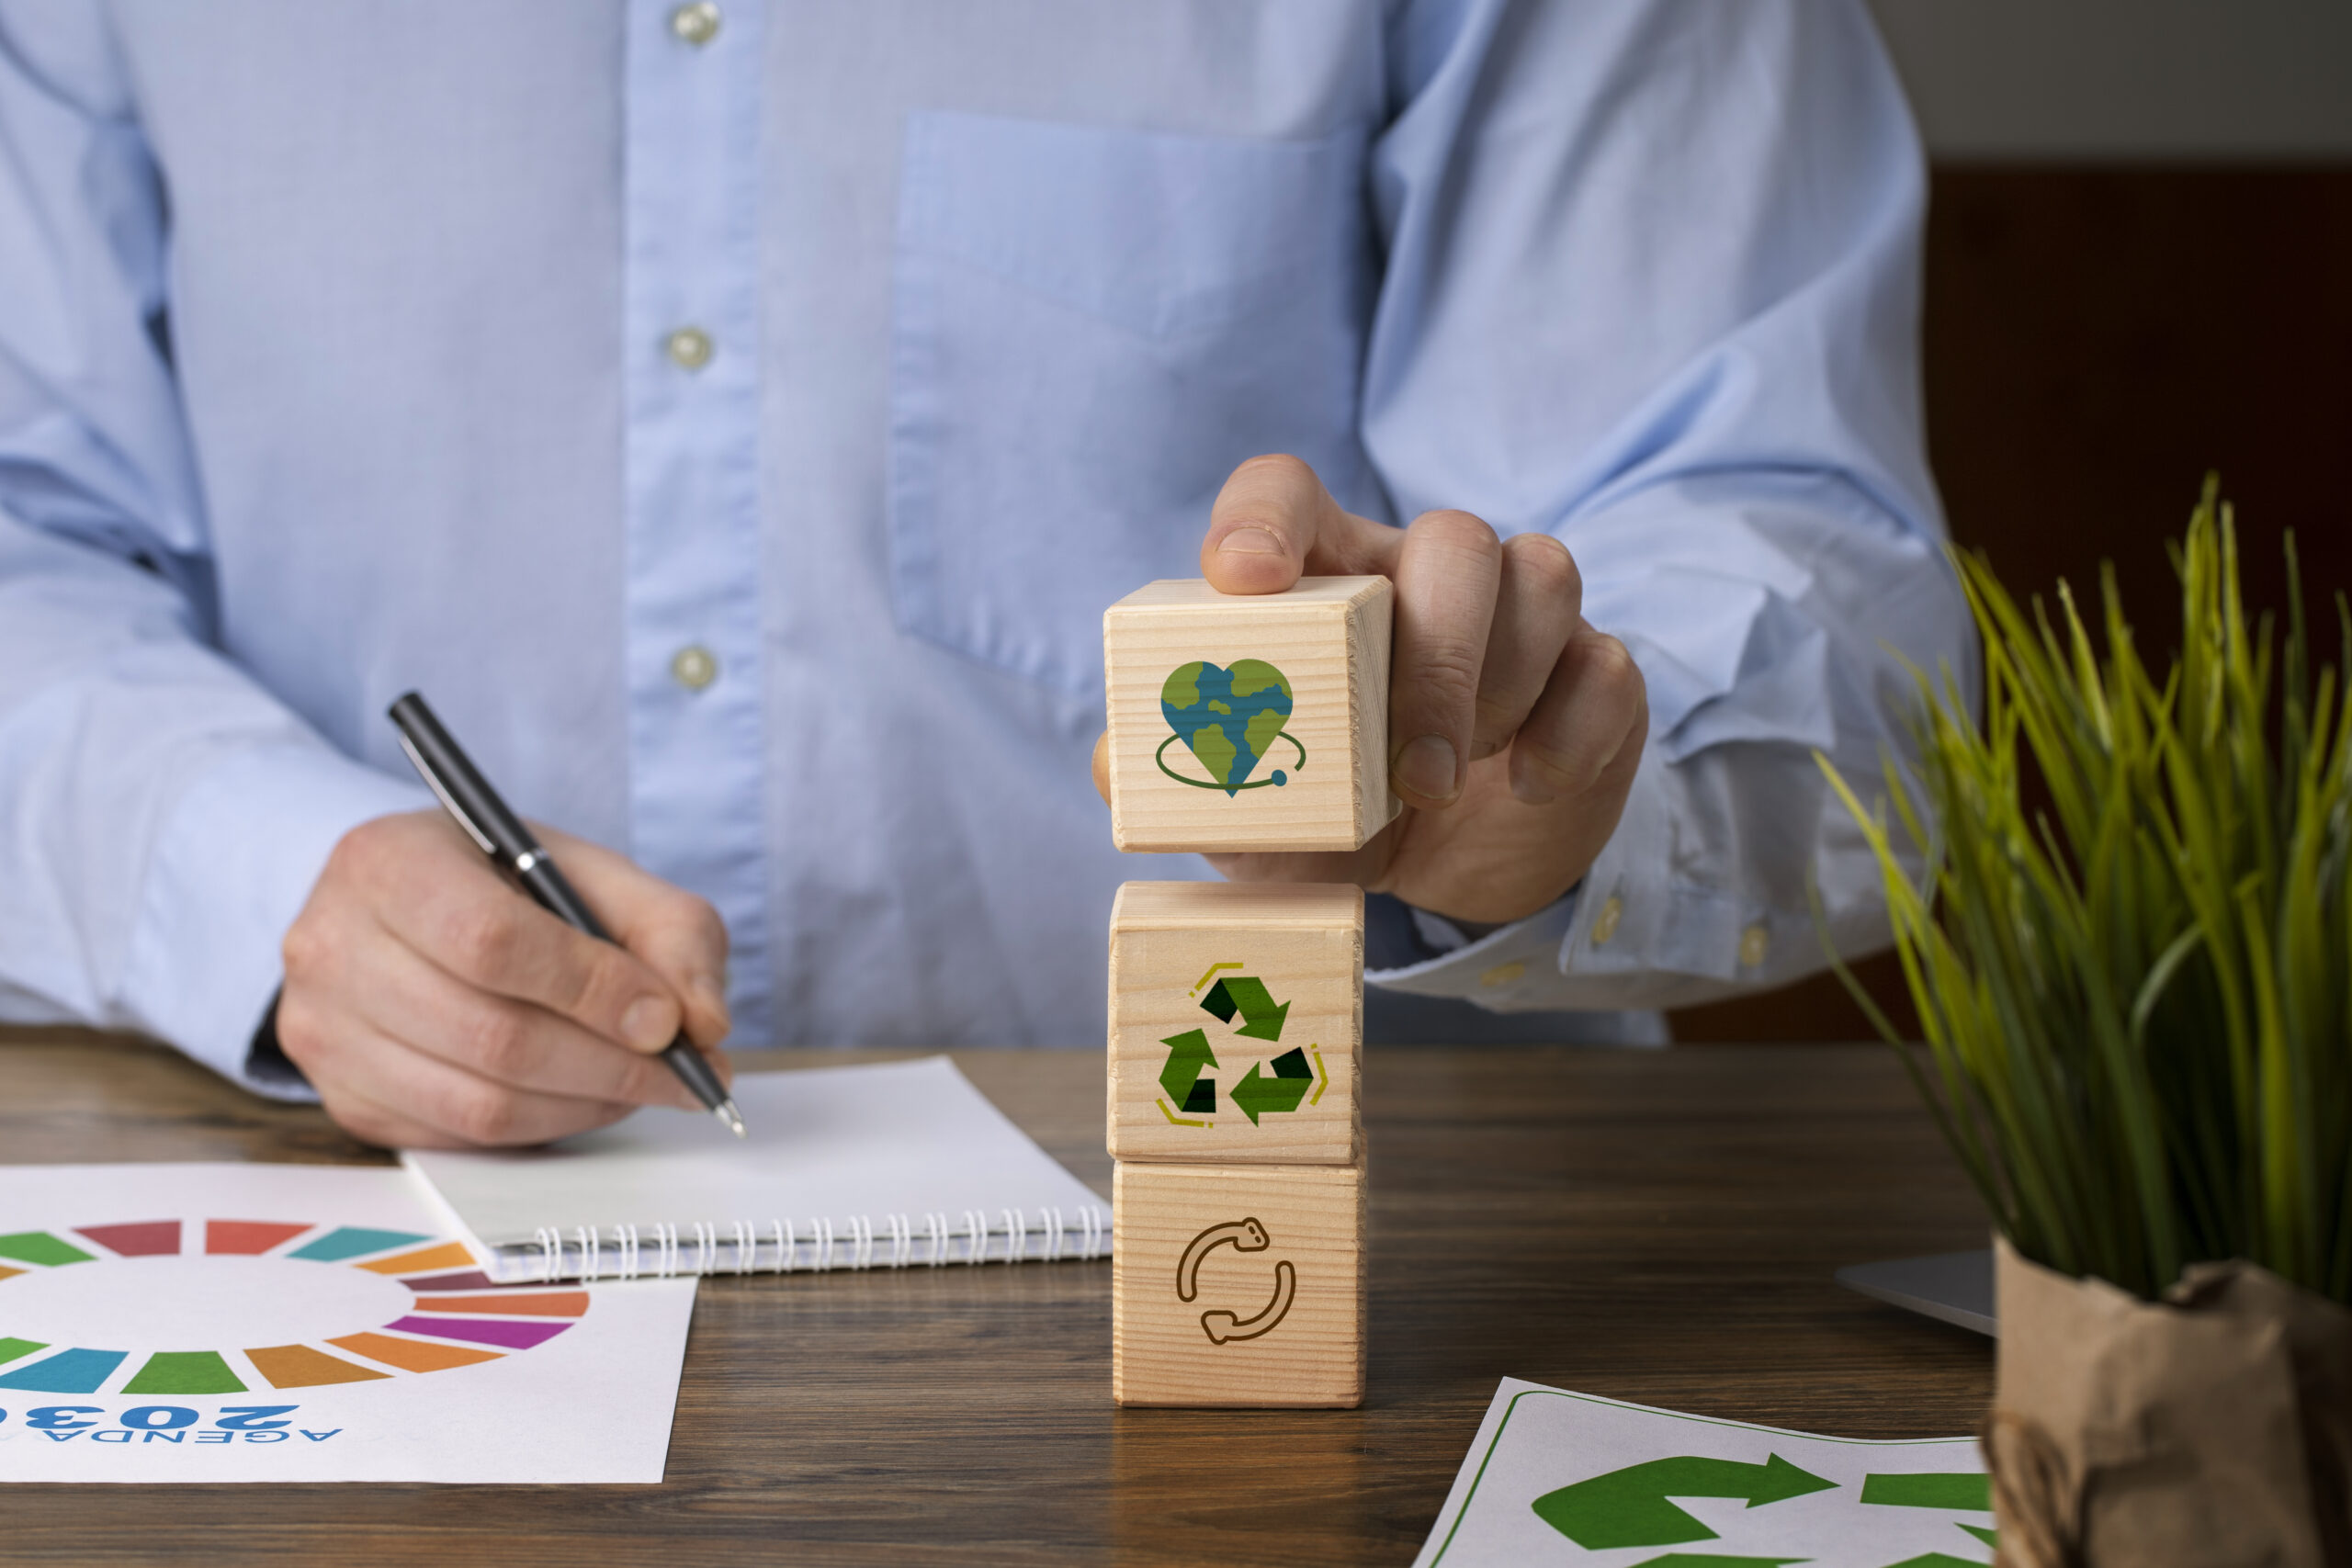 A sigla em inglês ESG representa a sustentabilidade ambiental, social e de governança corporativa (Environmental, Social and Governance) nas empresas